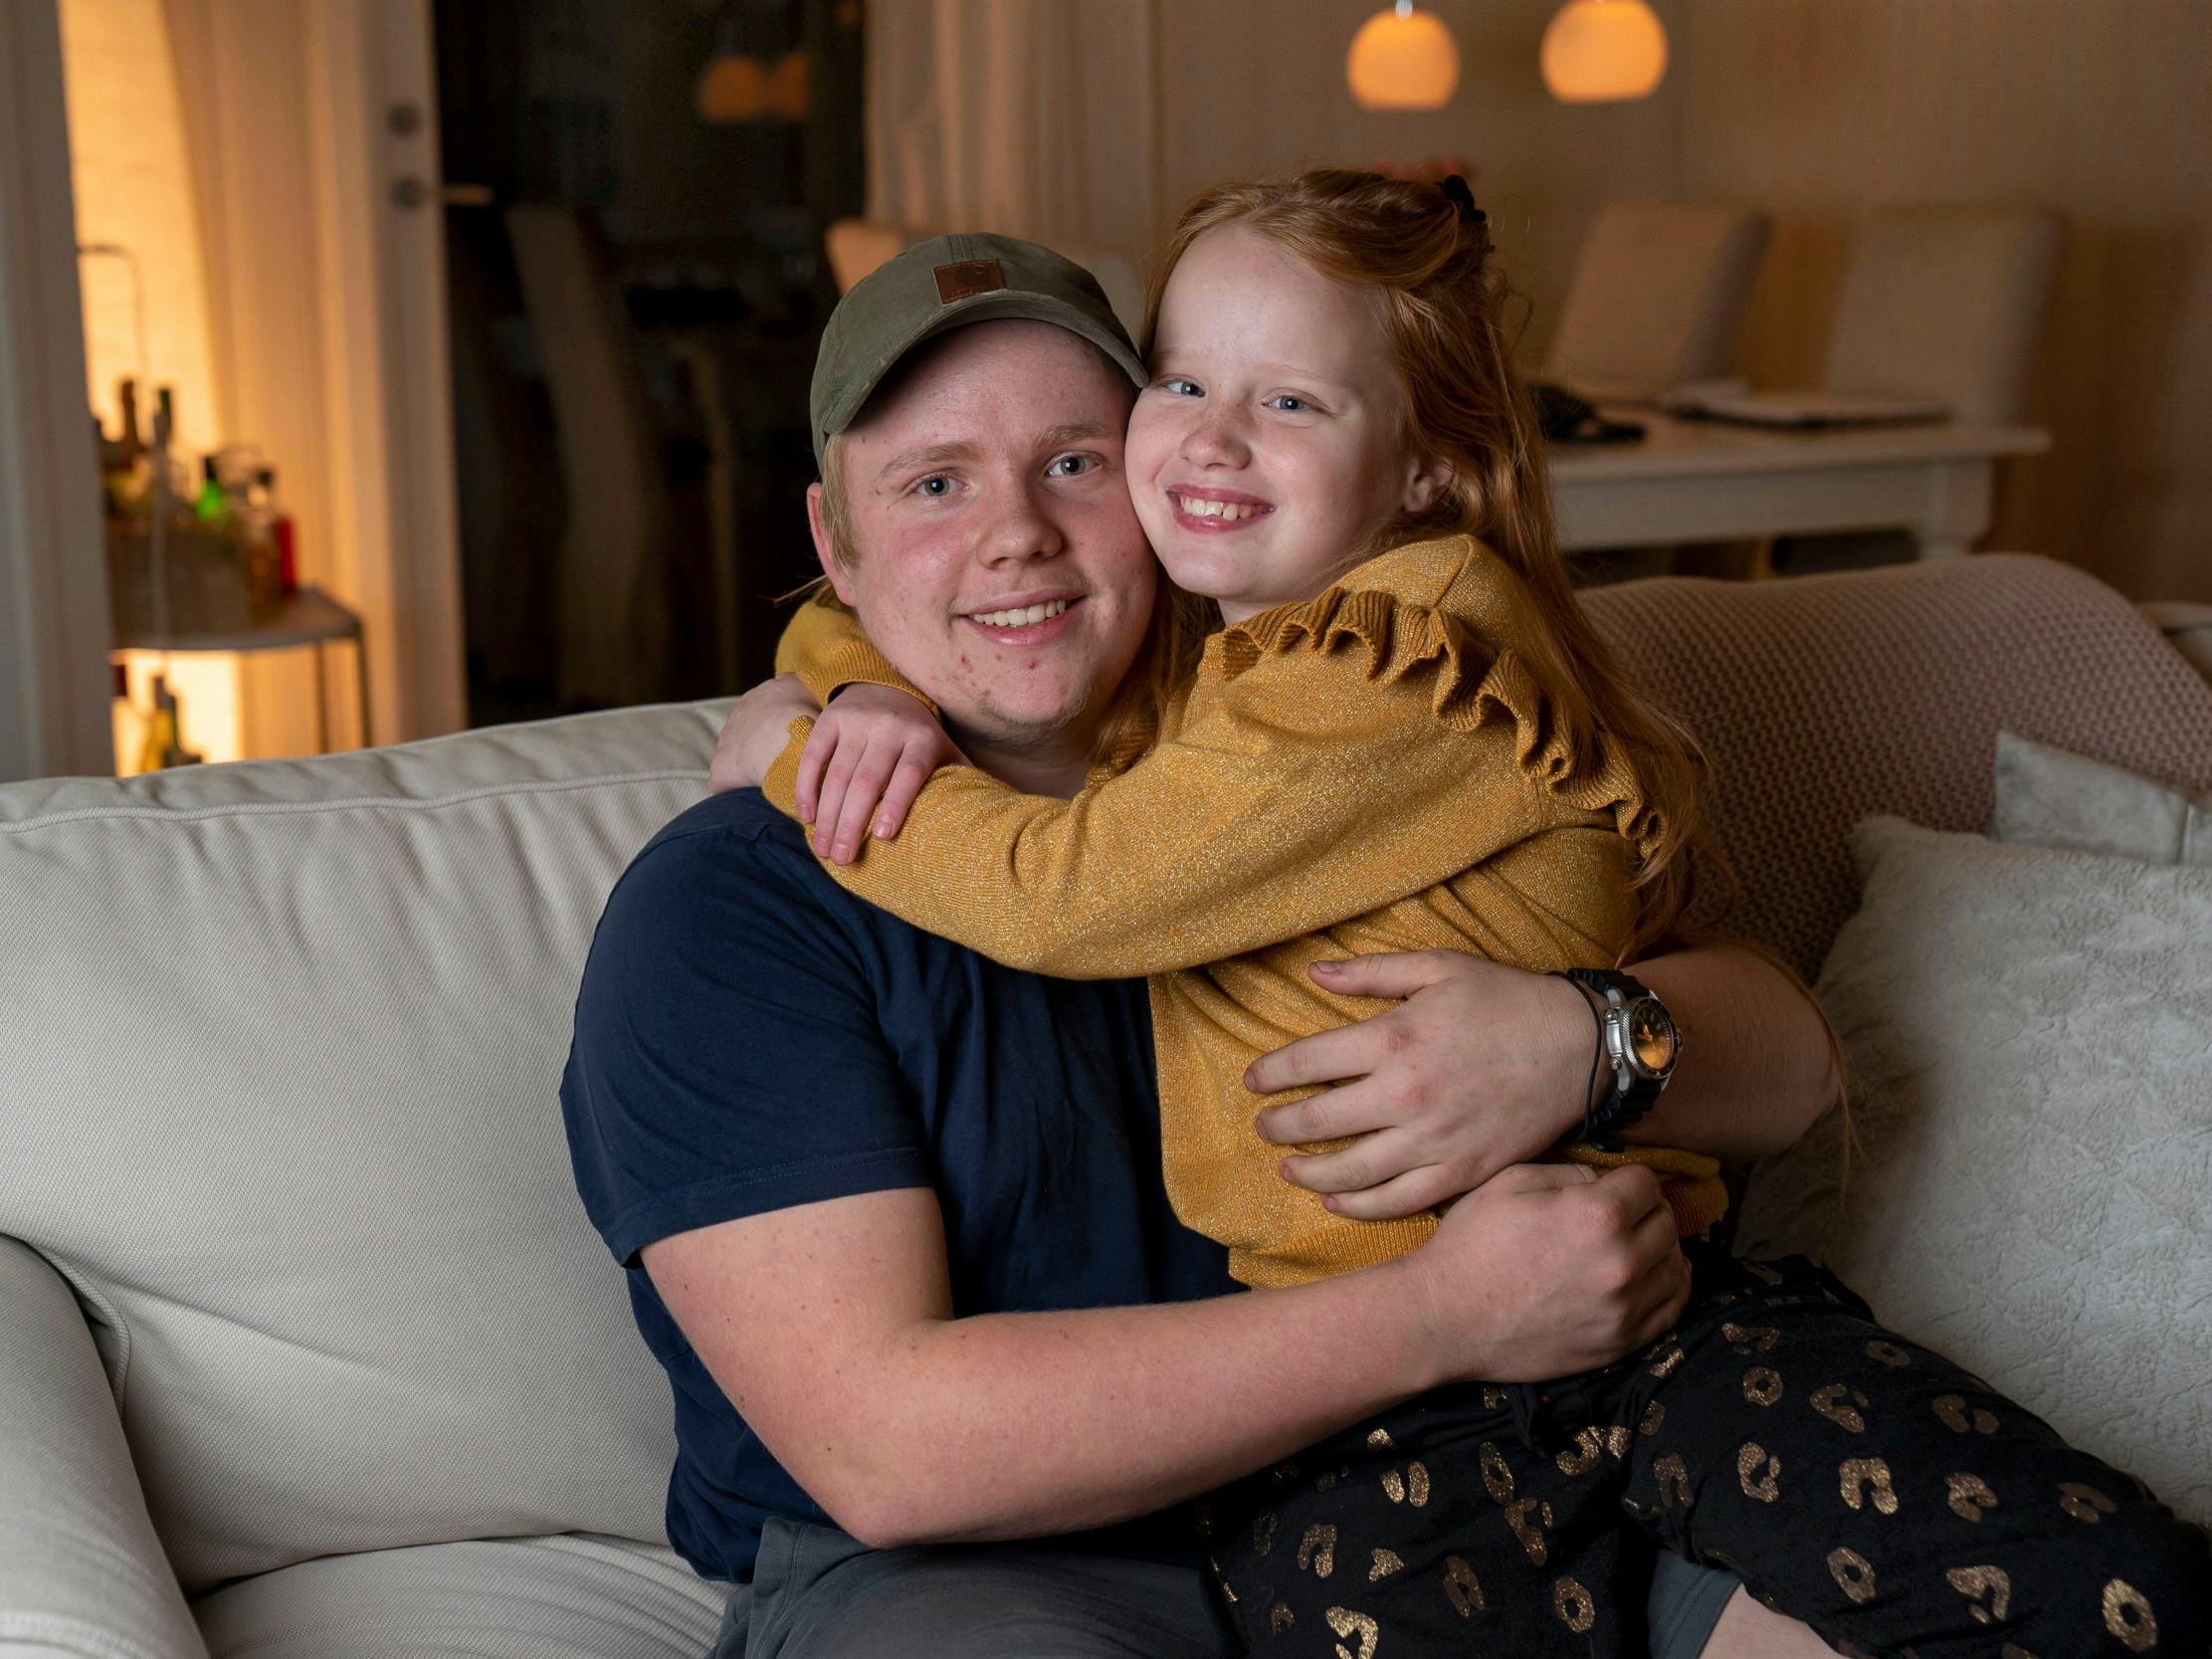 15-årige Benjamin Bjerregaard Mathiesen knuselsker sin 10-årige lillesøster, Victoria Bjerregaard Mathiesen. Følelsen er gengældt.